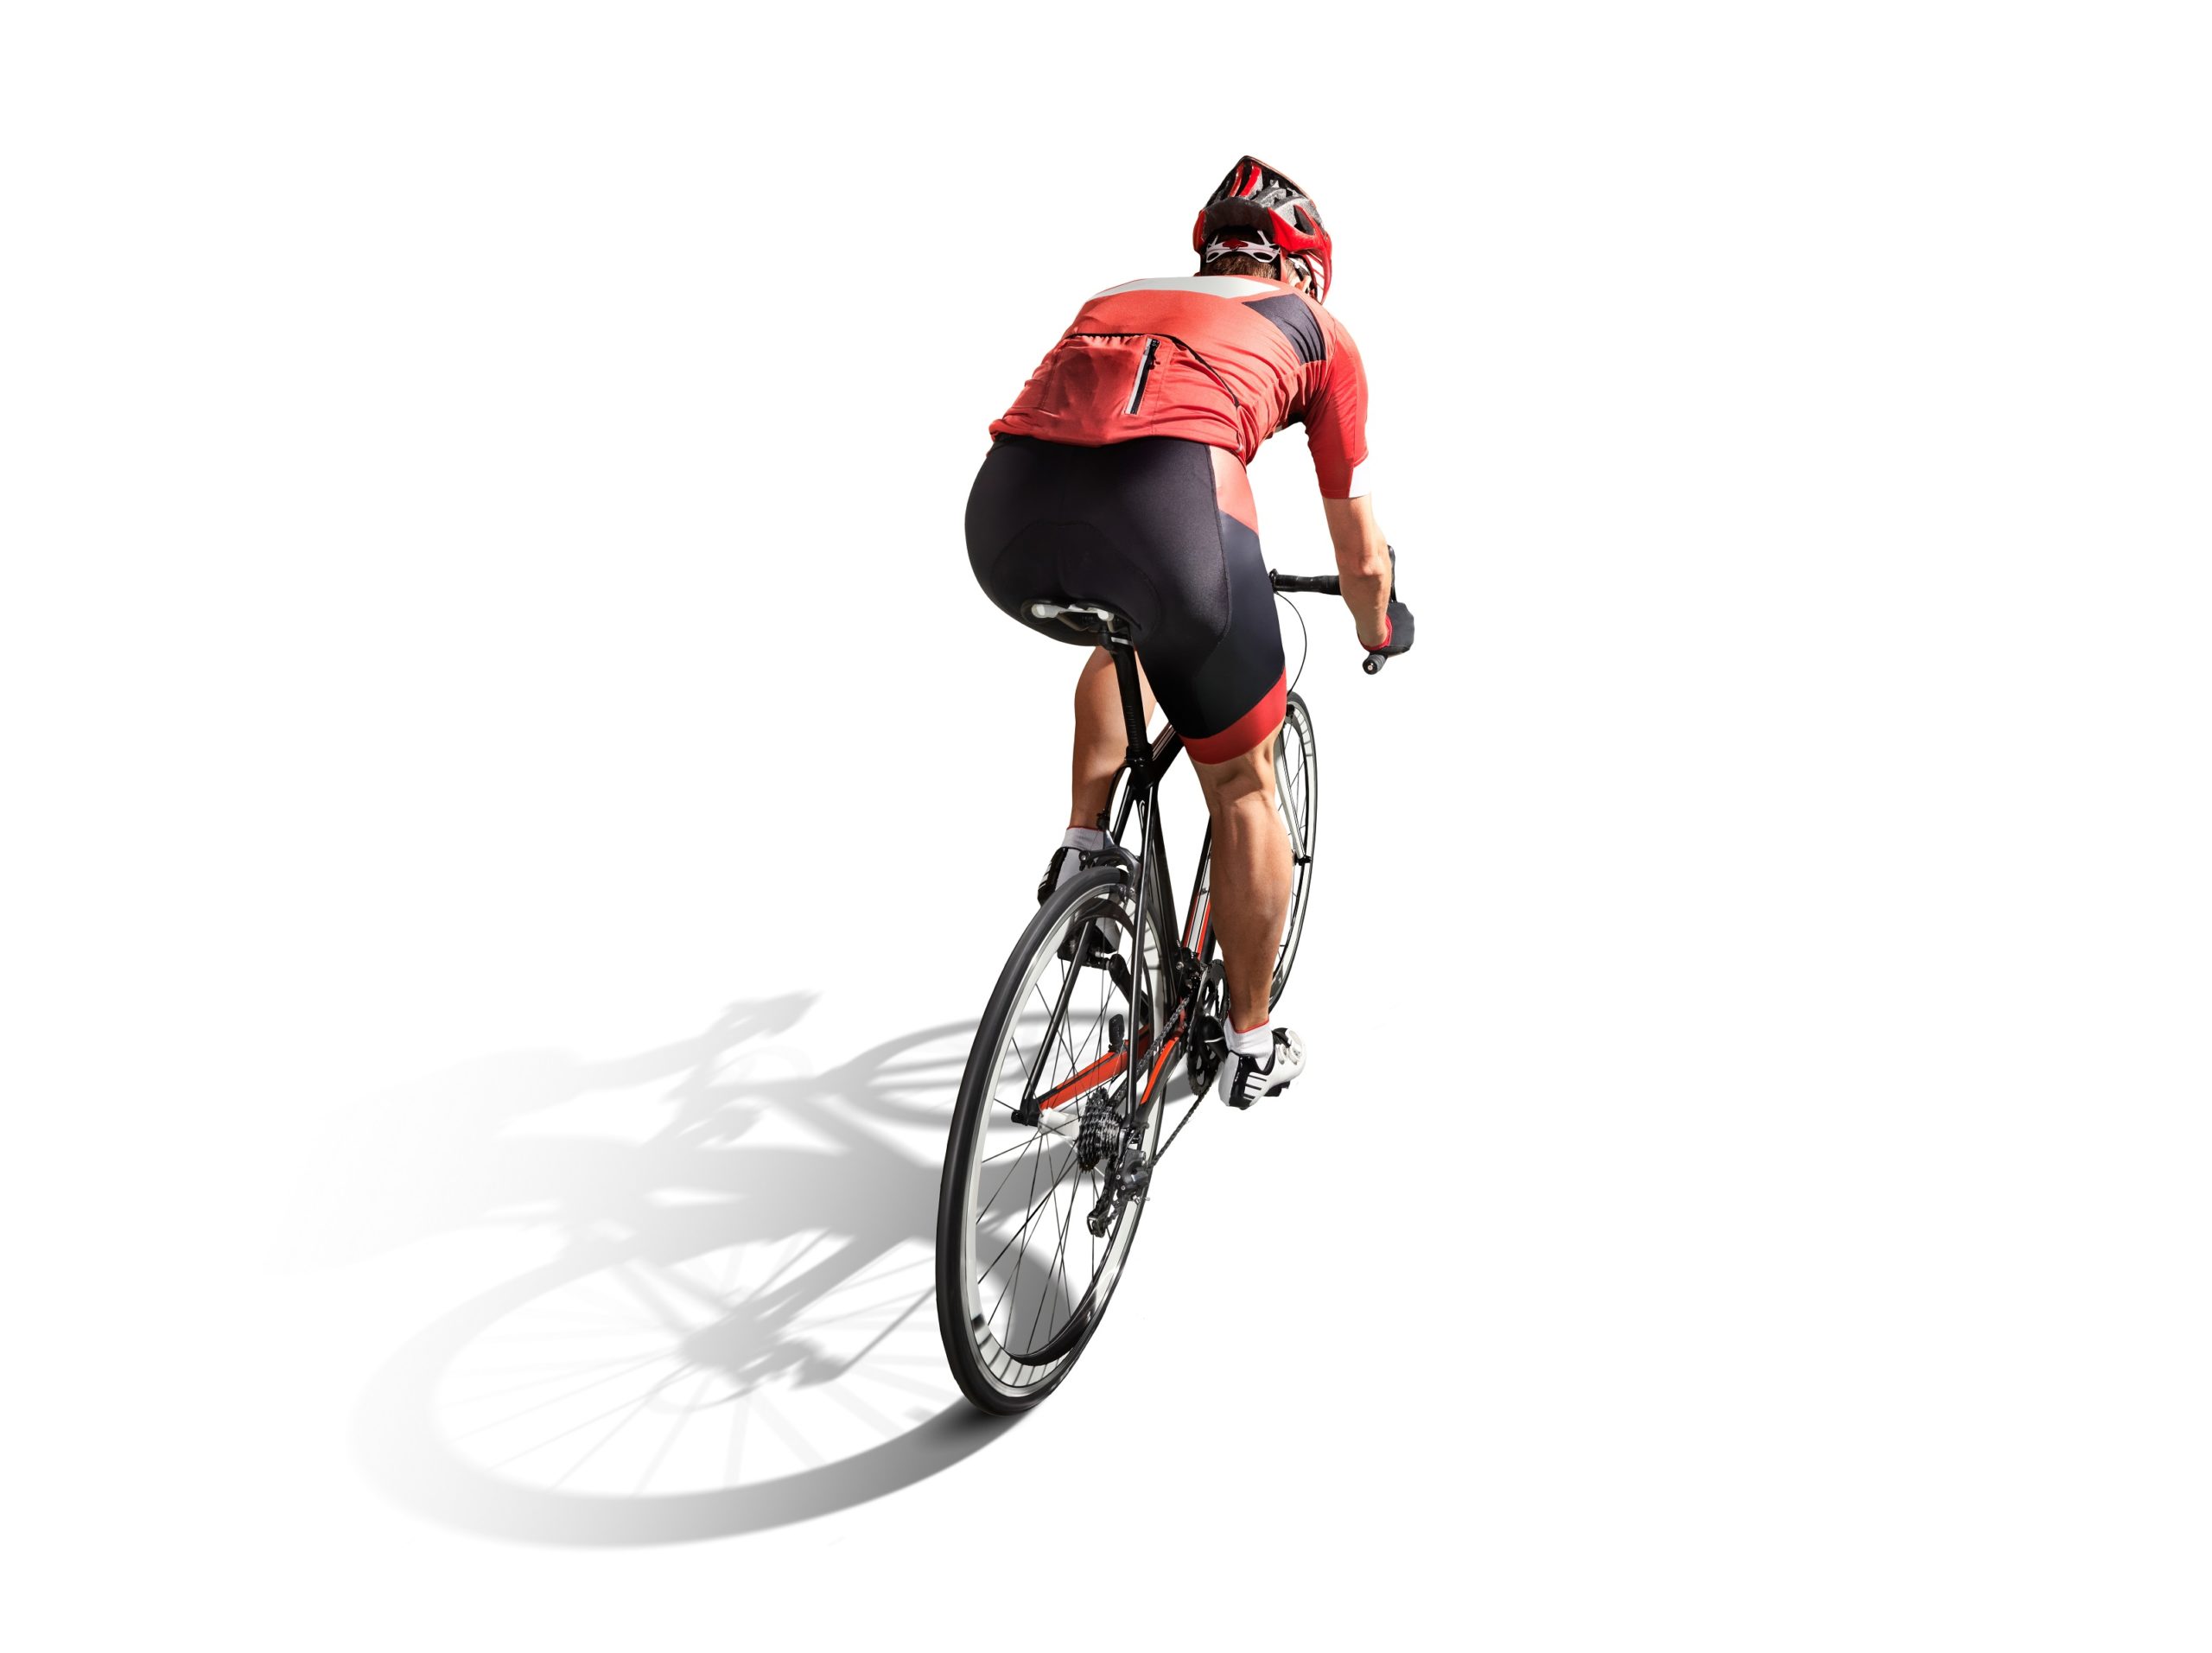 Leistungsdiagnostik für Radfahrer - Bild eines Profi-Radfahrers